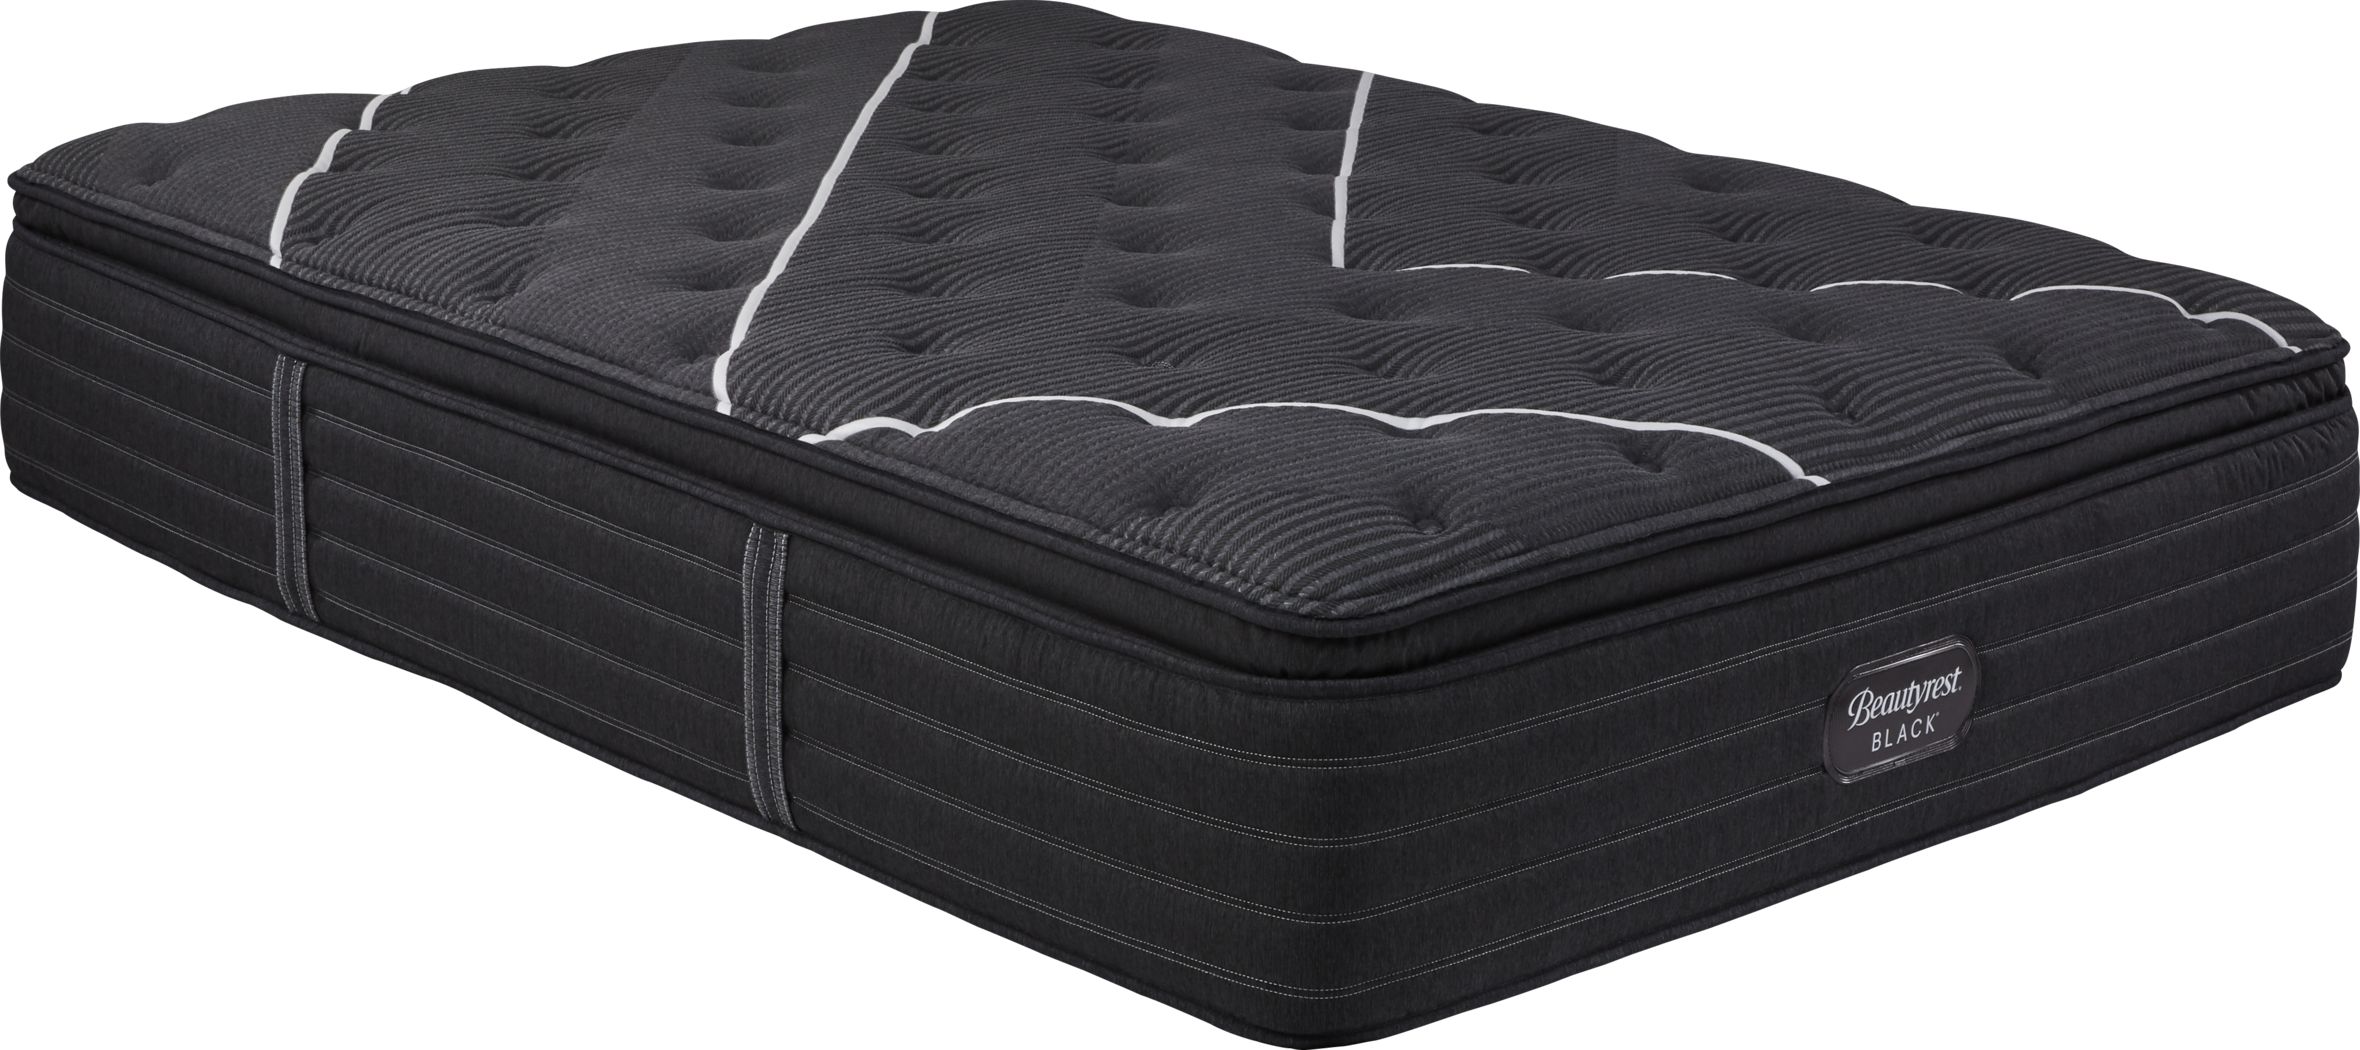 beautyrest pillowtop king mattress black